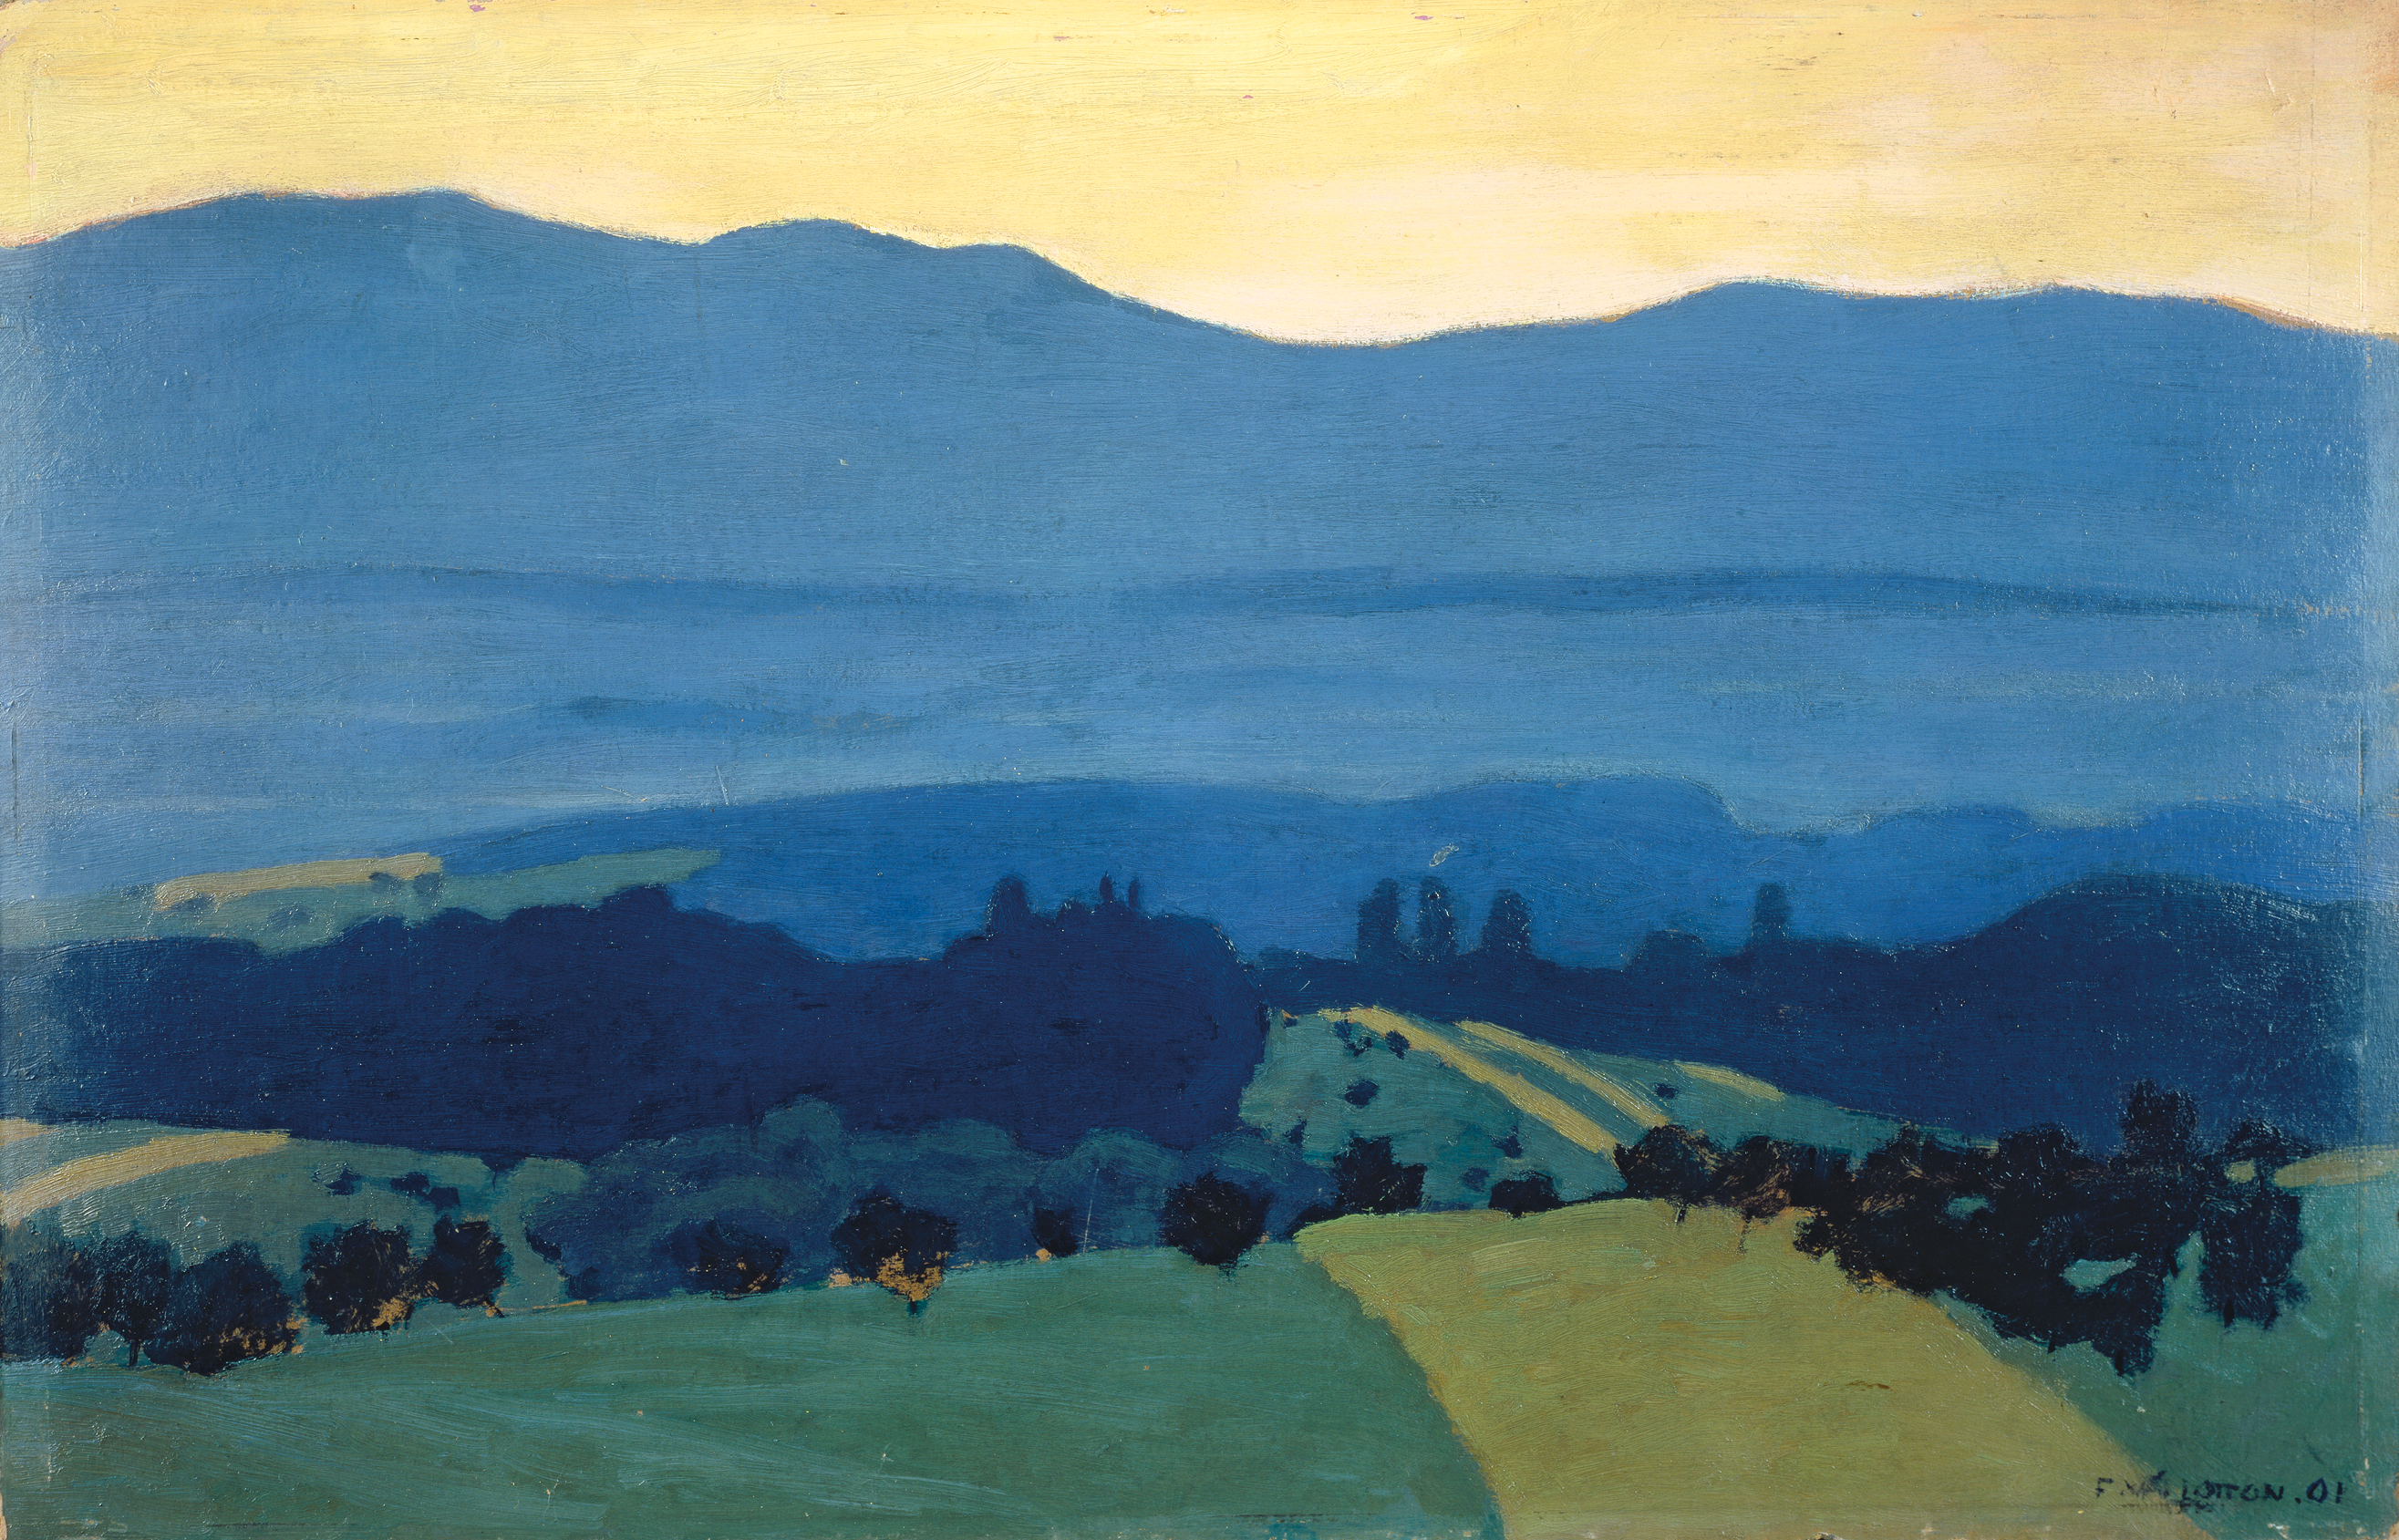 Romanel Yakınlarındaki Jura Dağları'ndan Manzara by Félix Vallotton - 1900 - 32,0 x 49,5 cm 